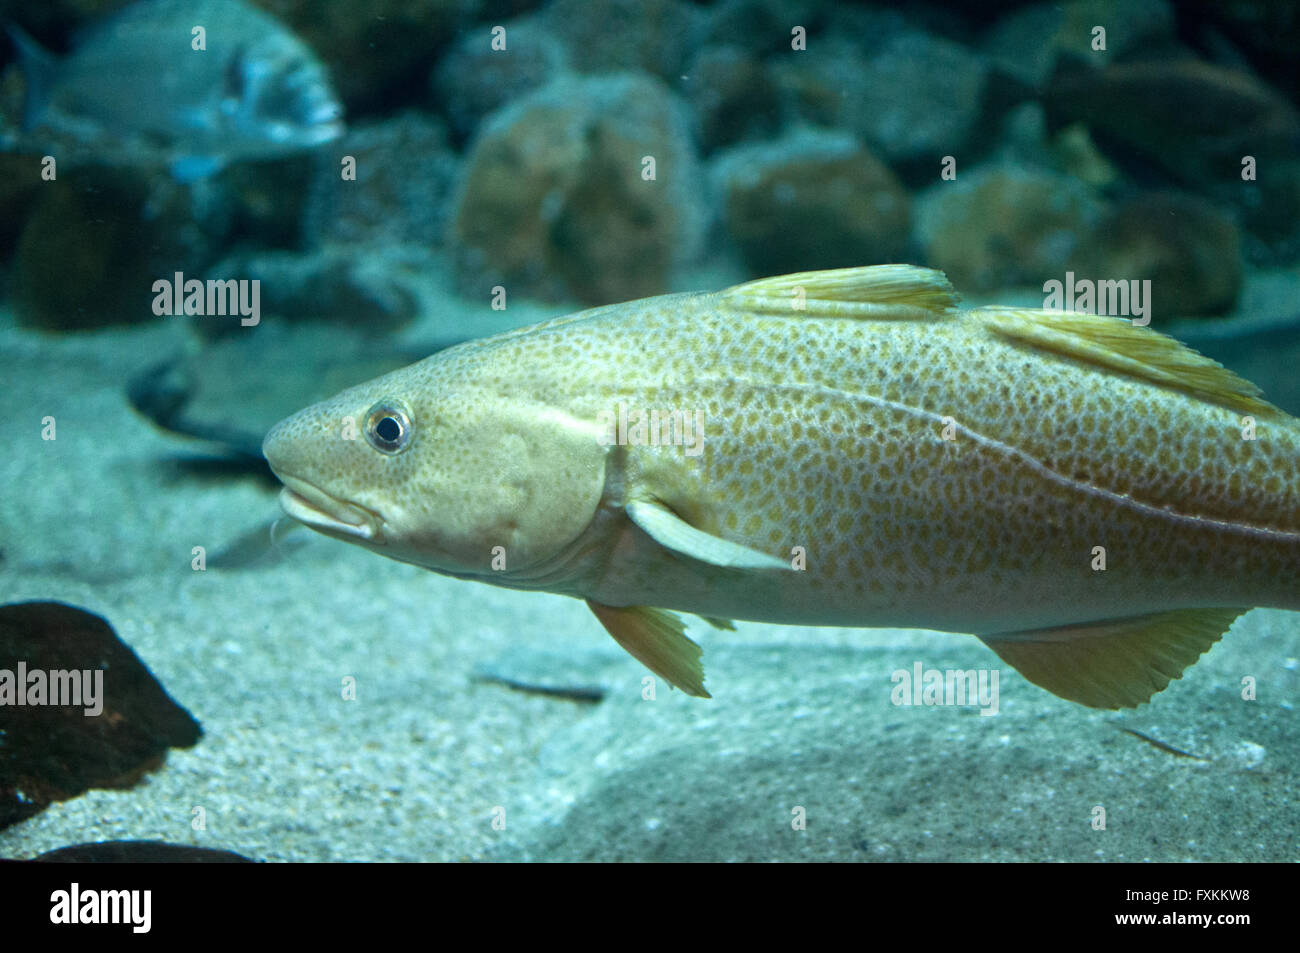 Cod fish swimming in aquarium Stock Photo